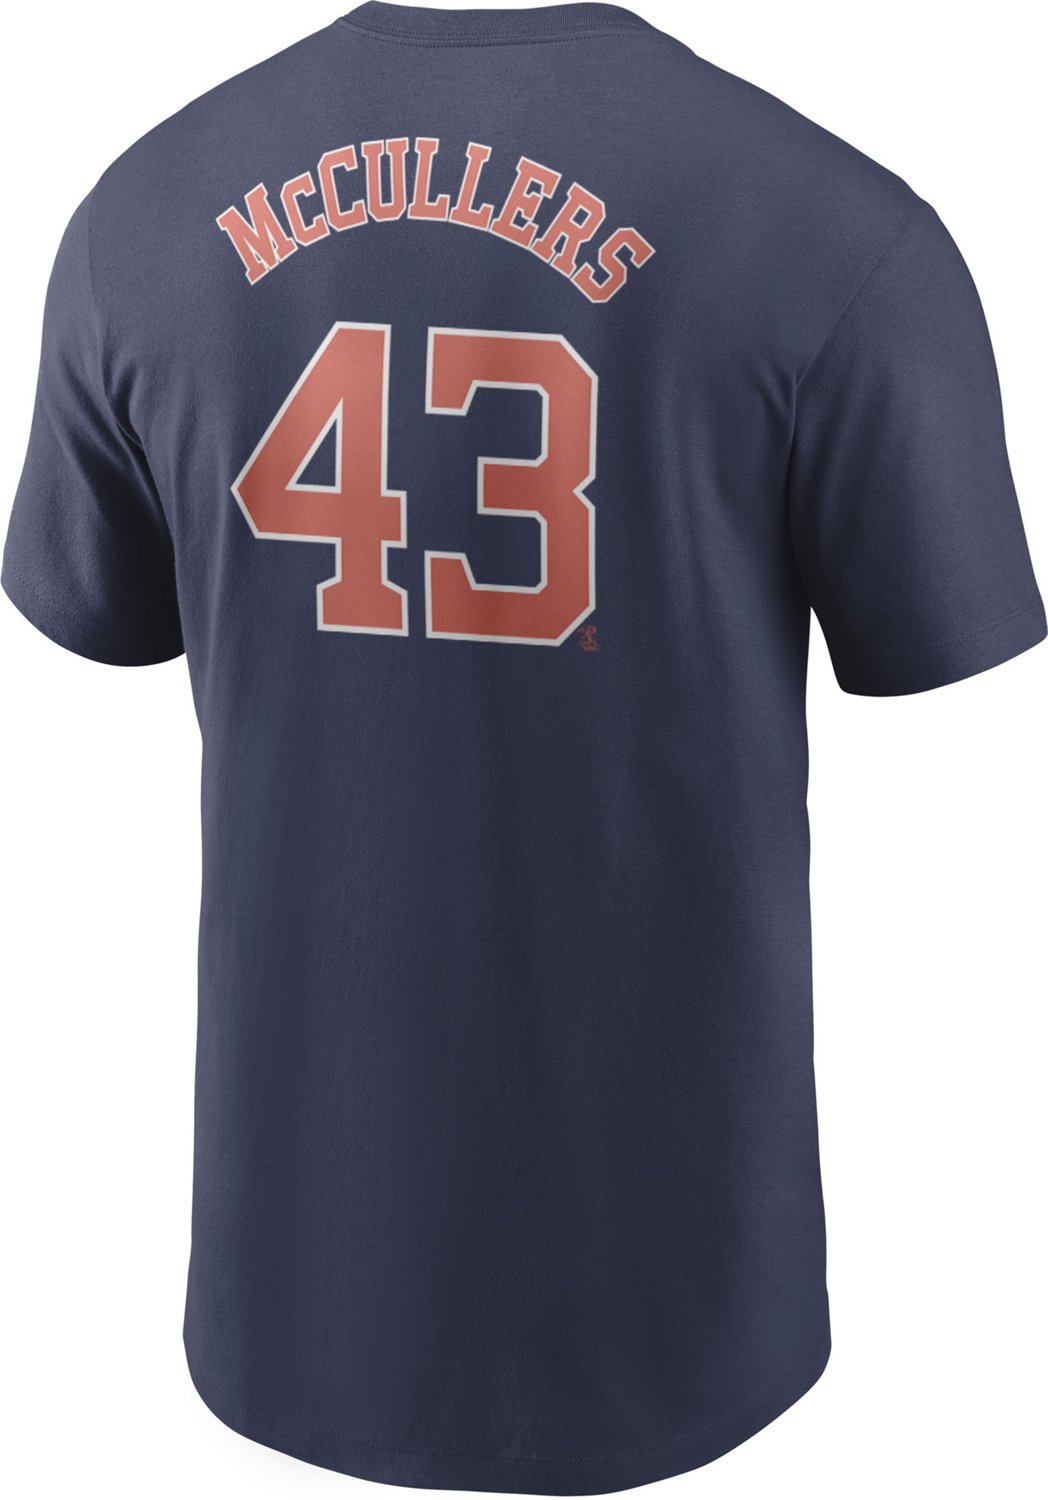 Nike Men's Houston Astros Lance McCullers 43 T-shirt